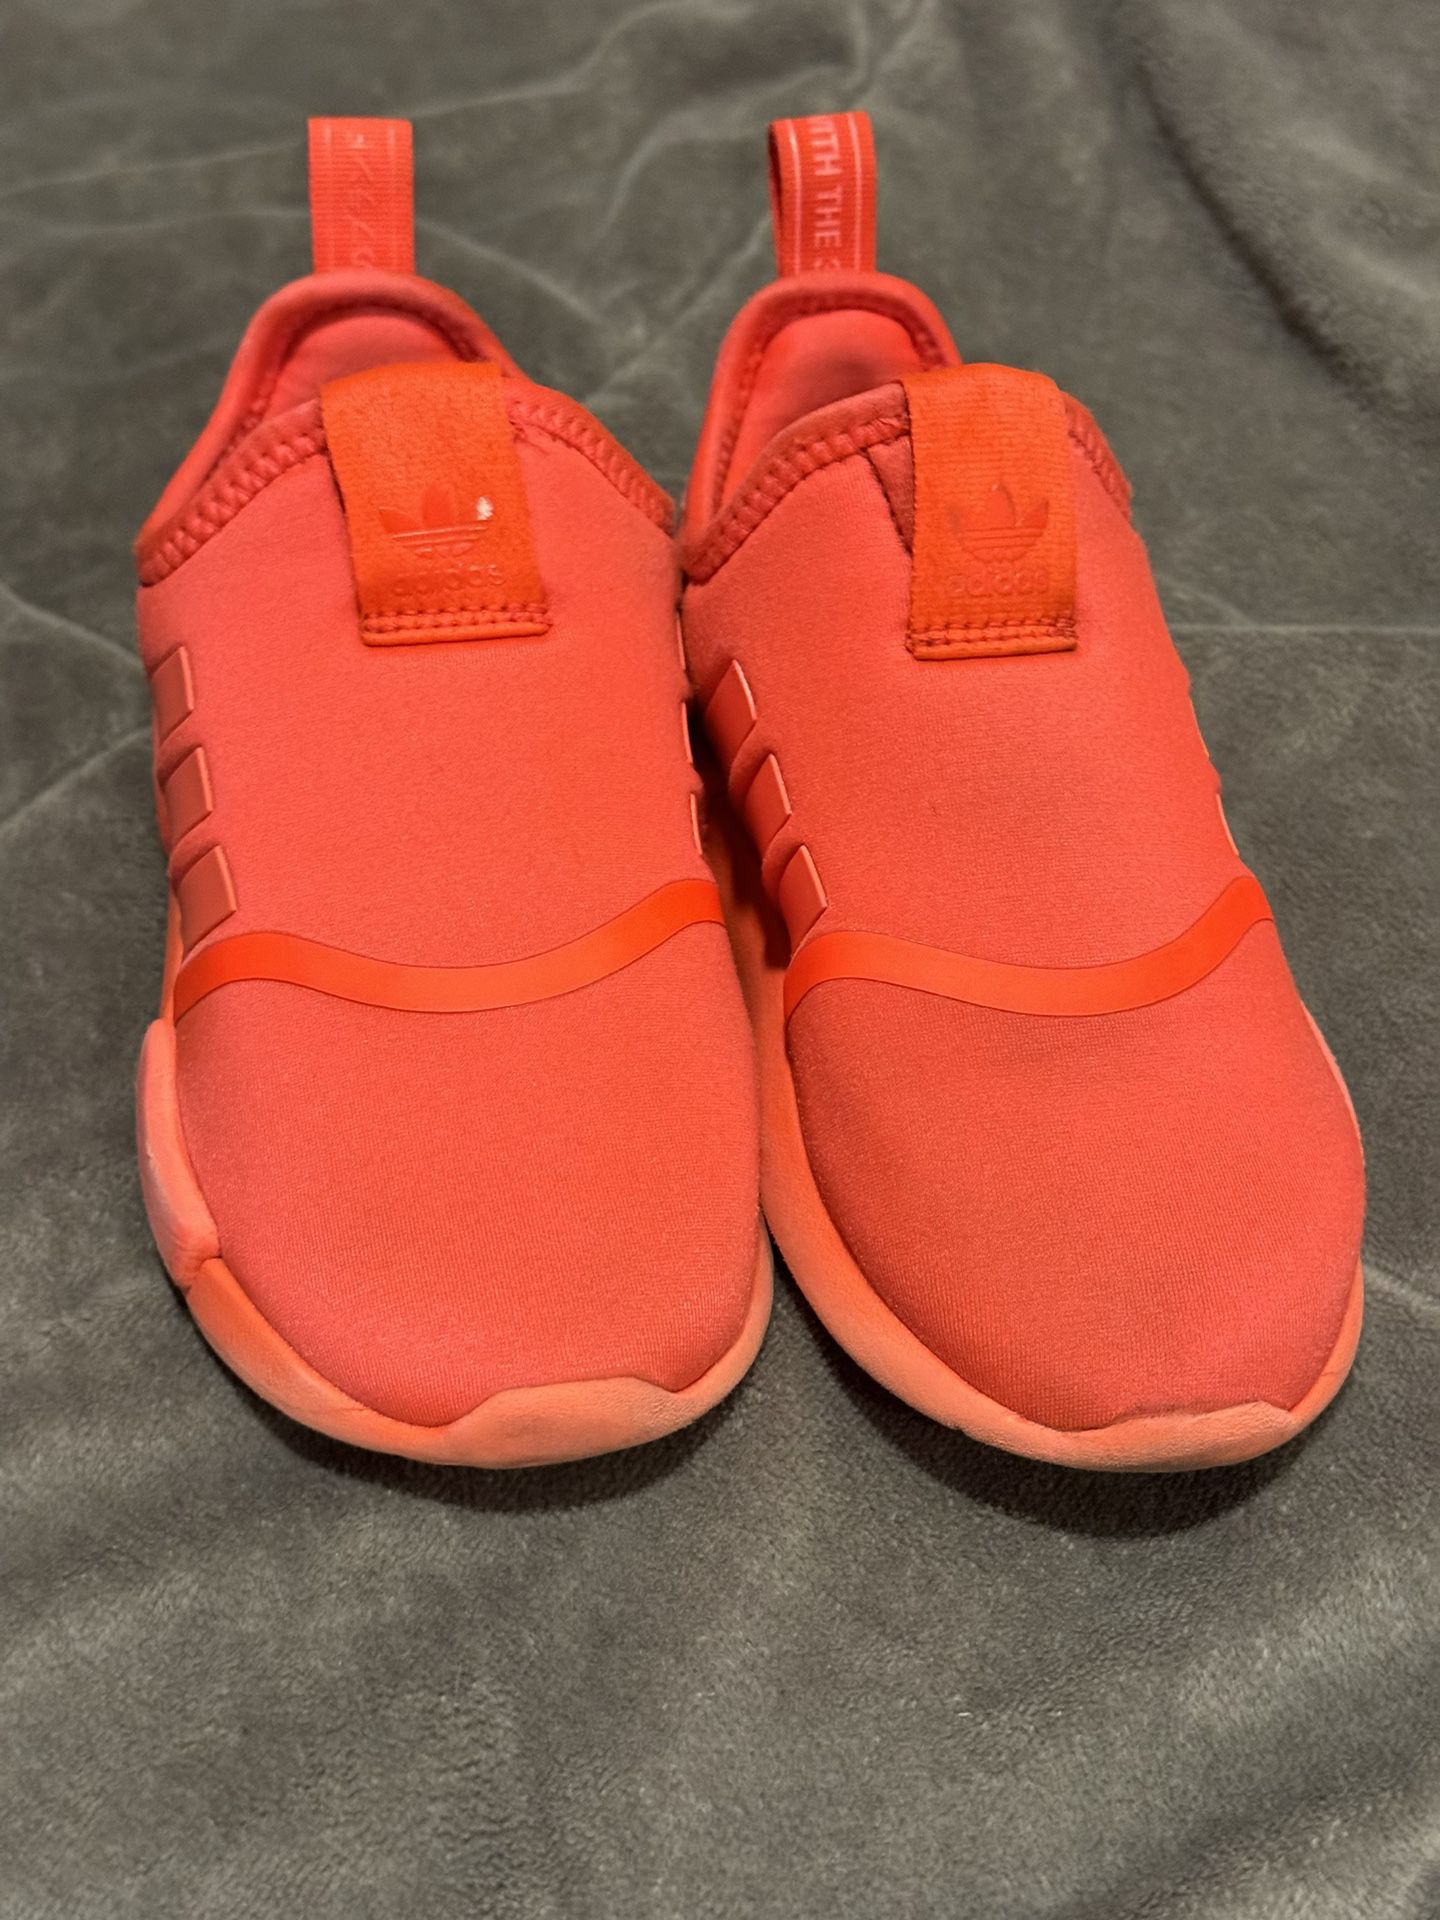 Orange Adidas Shoes Size 10k